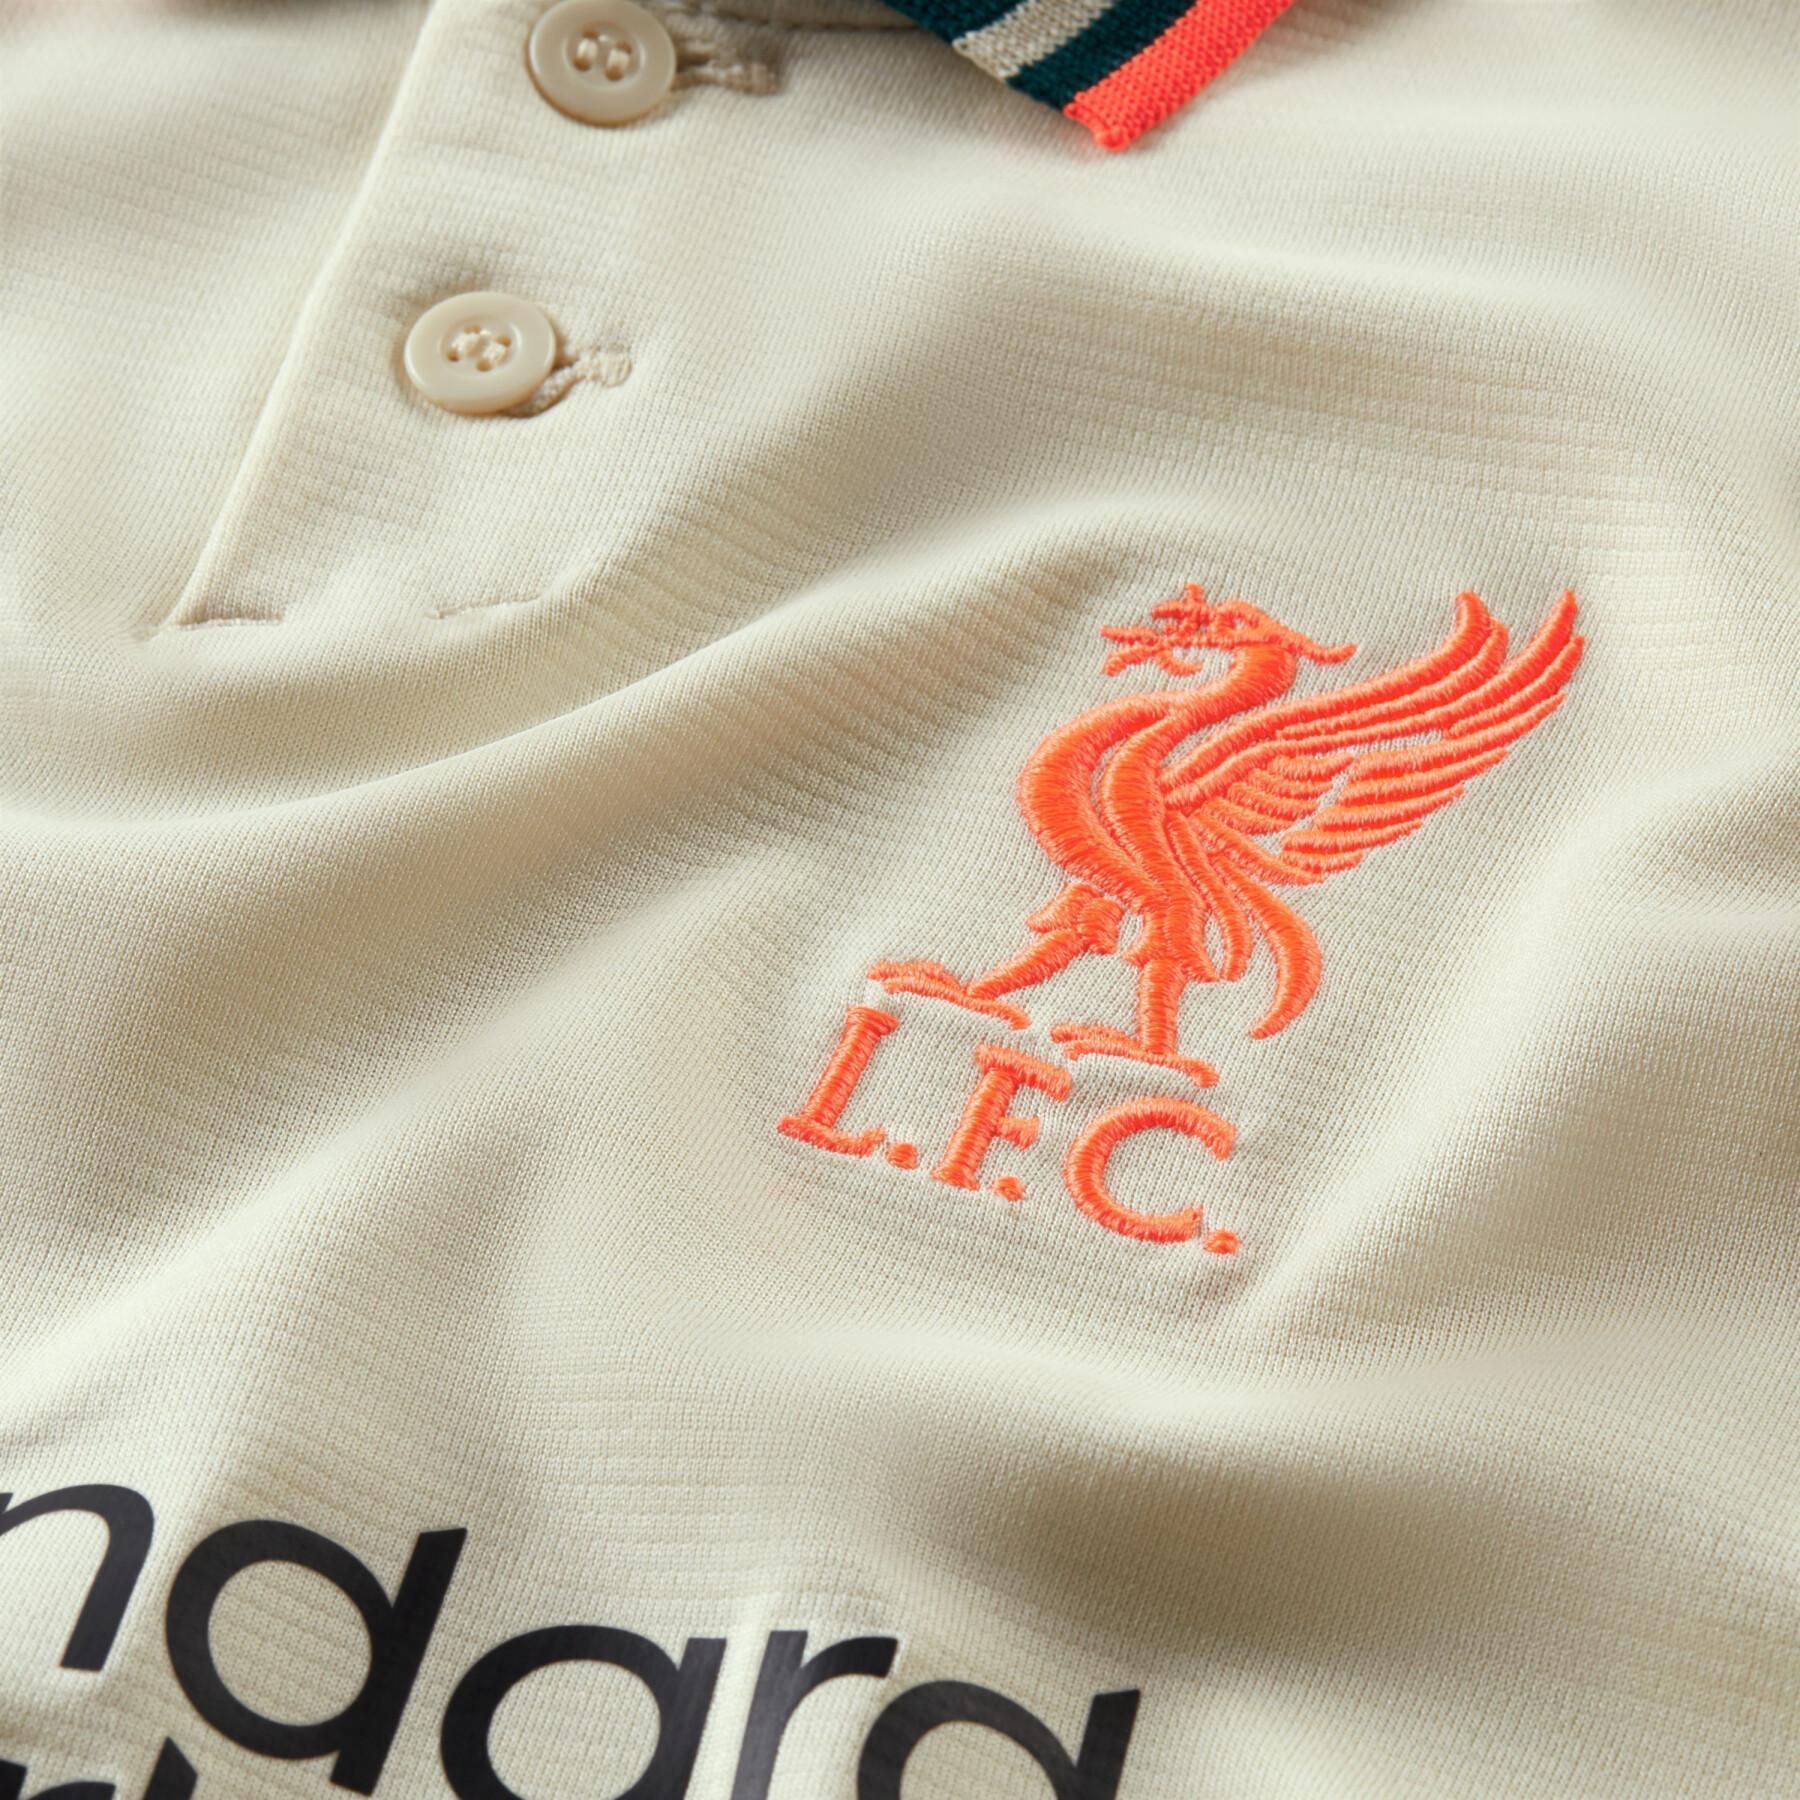 Dziecięca koszulka wyjazdowa Liverpool FC 2021/22